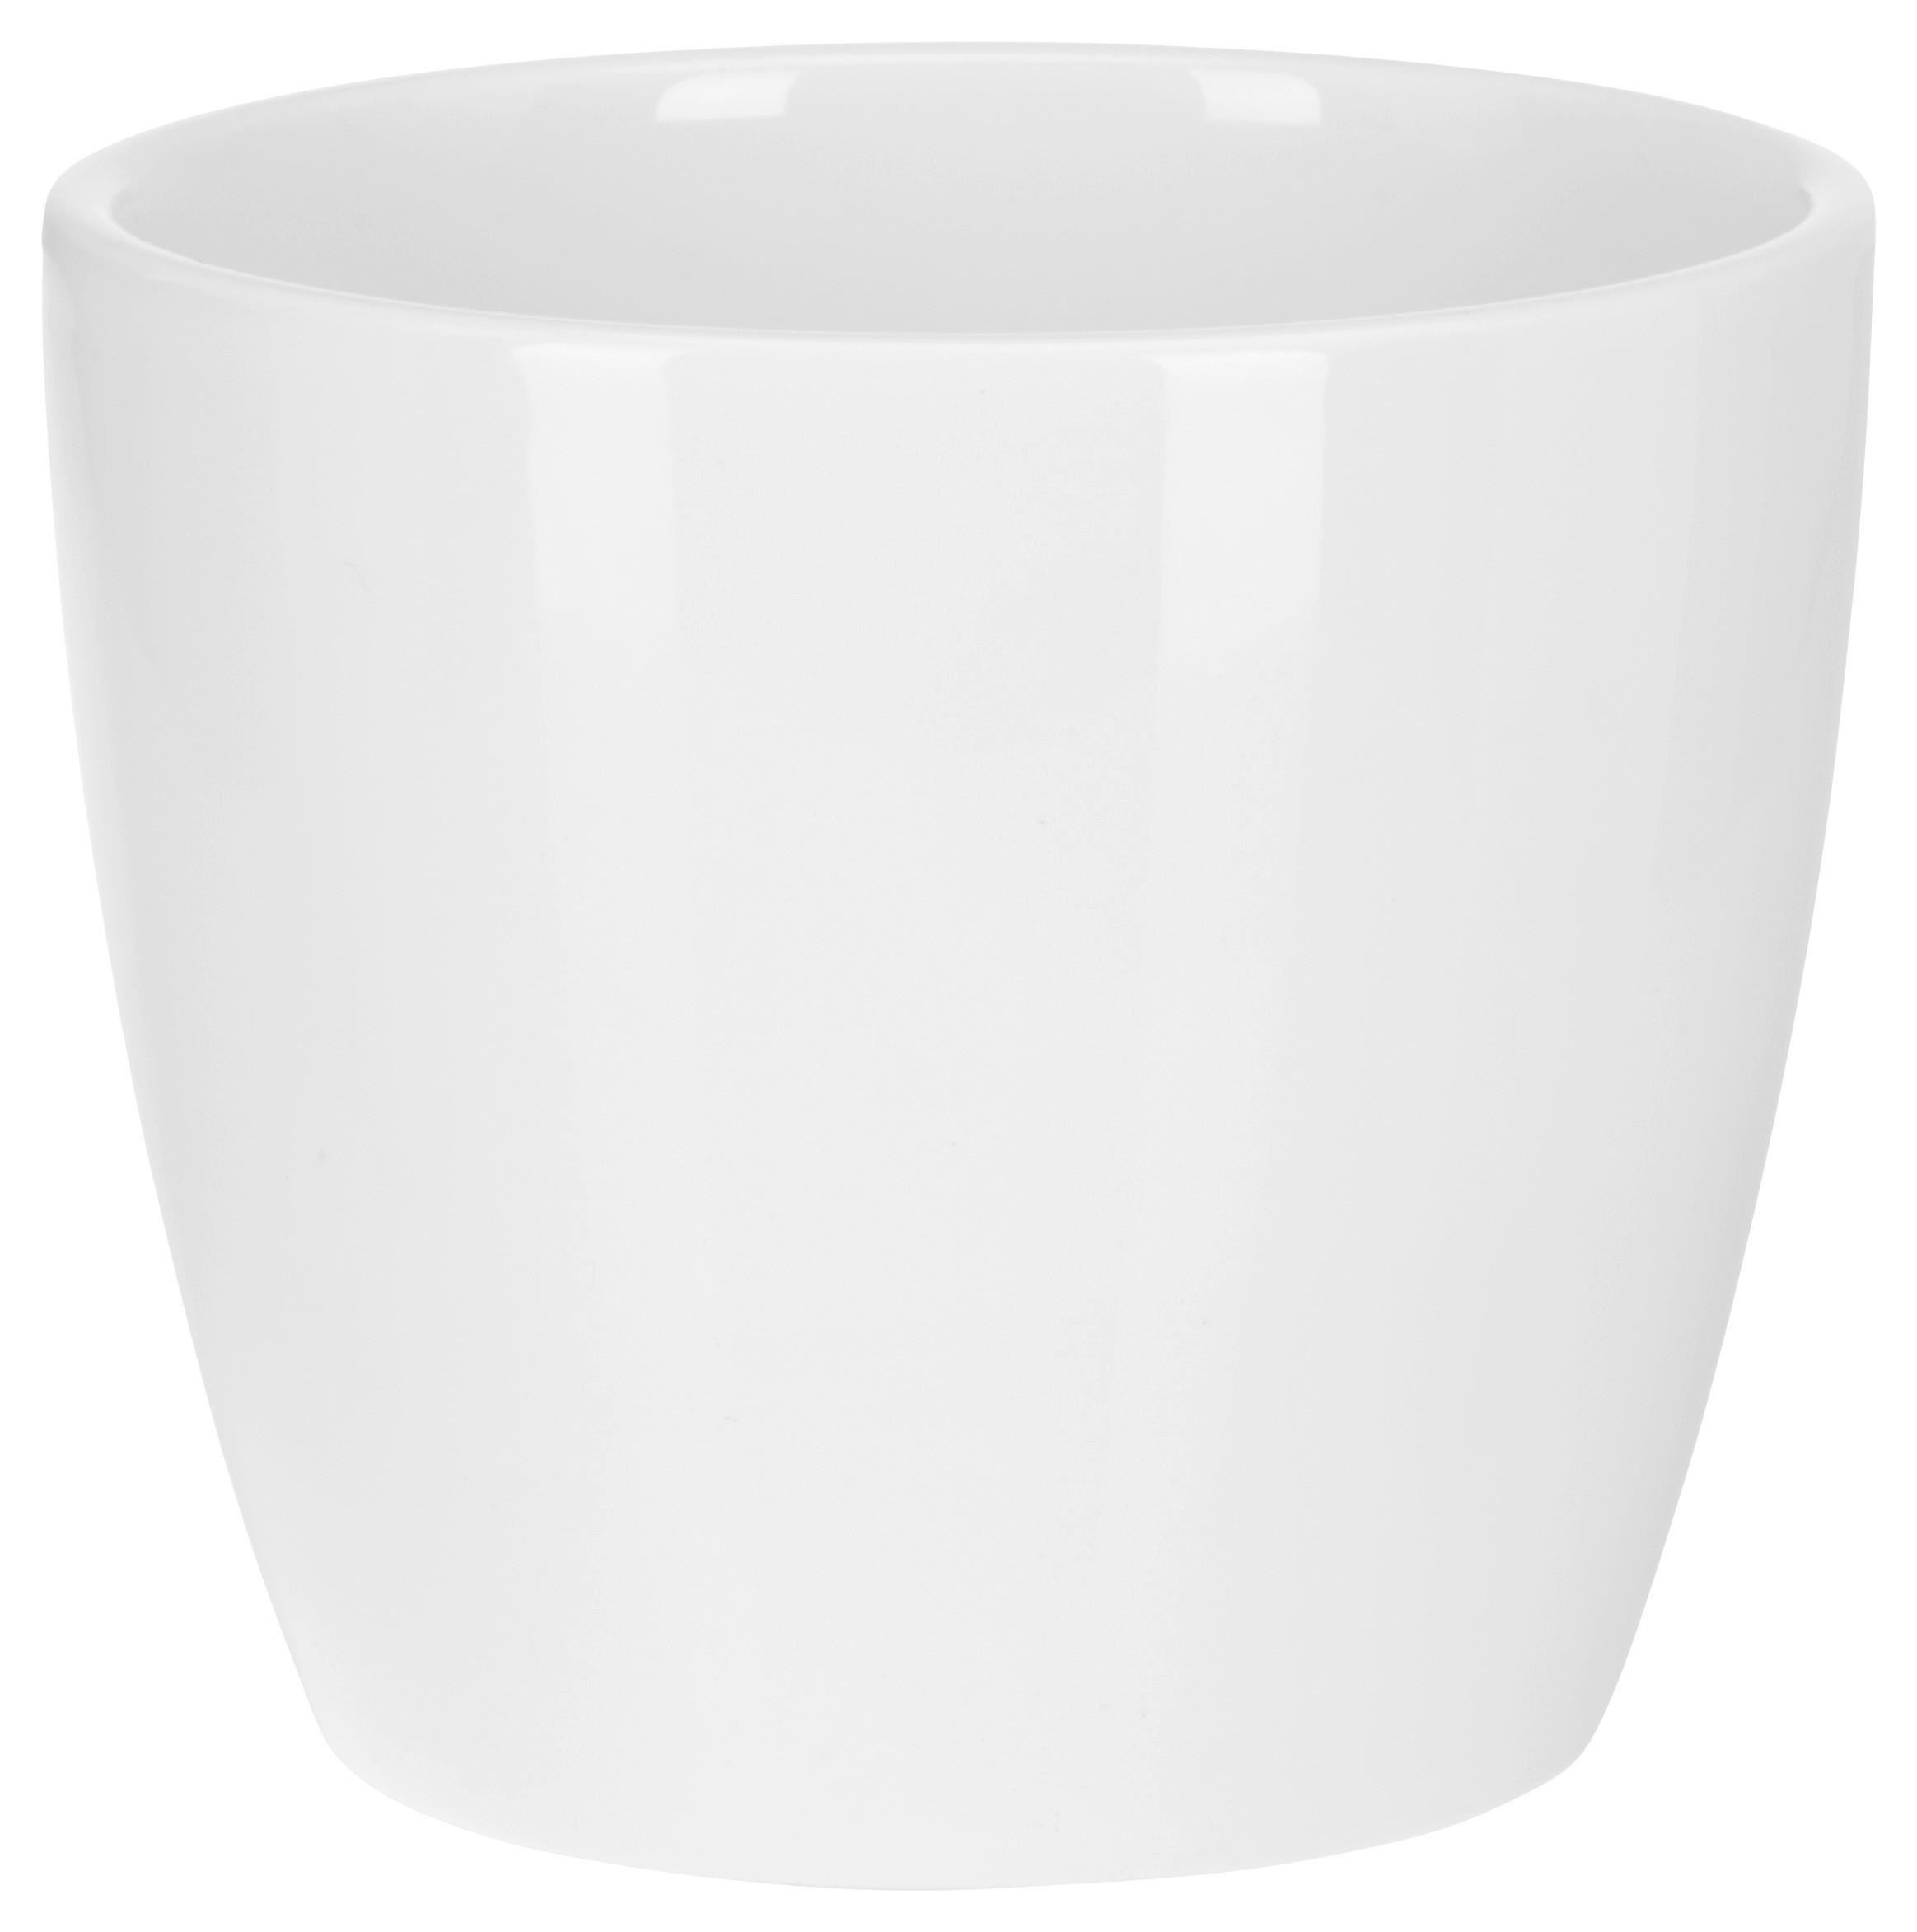 Kvetináč Stefanie - biela, keramika (10,3/8,9cm) - Based